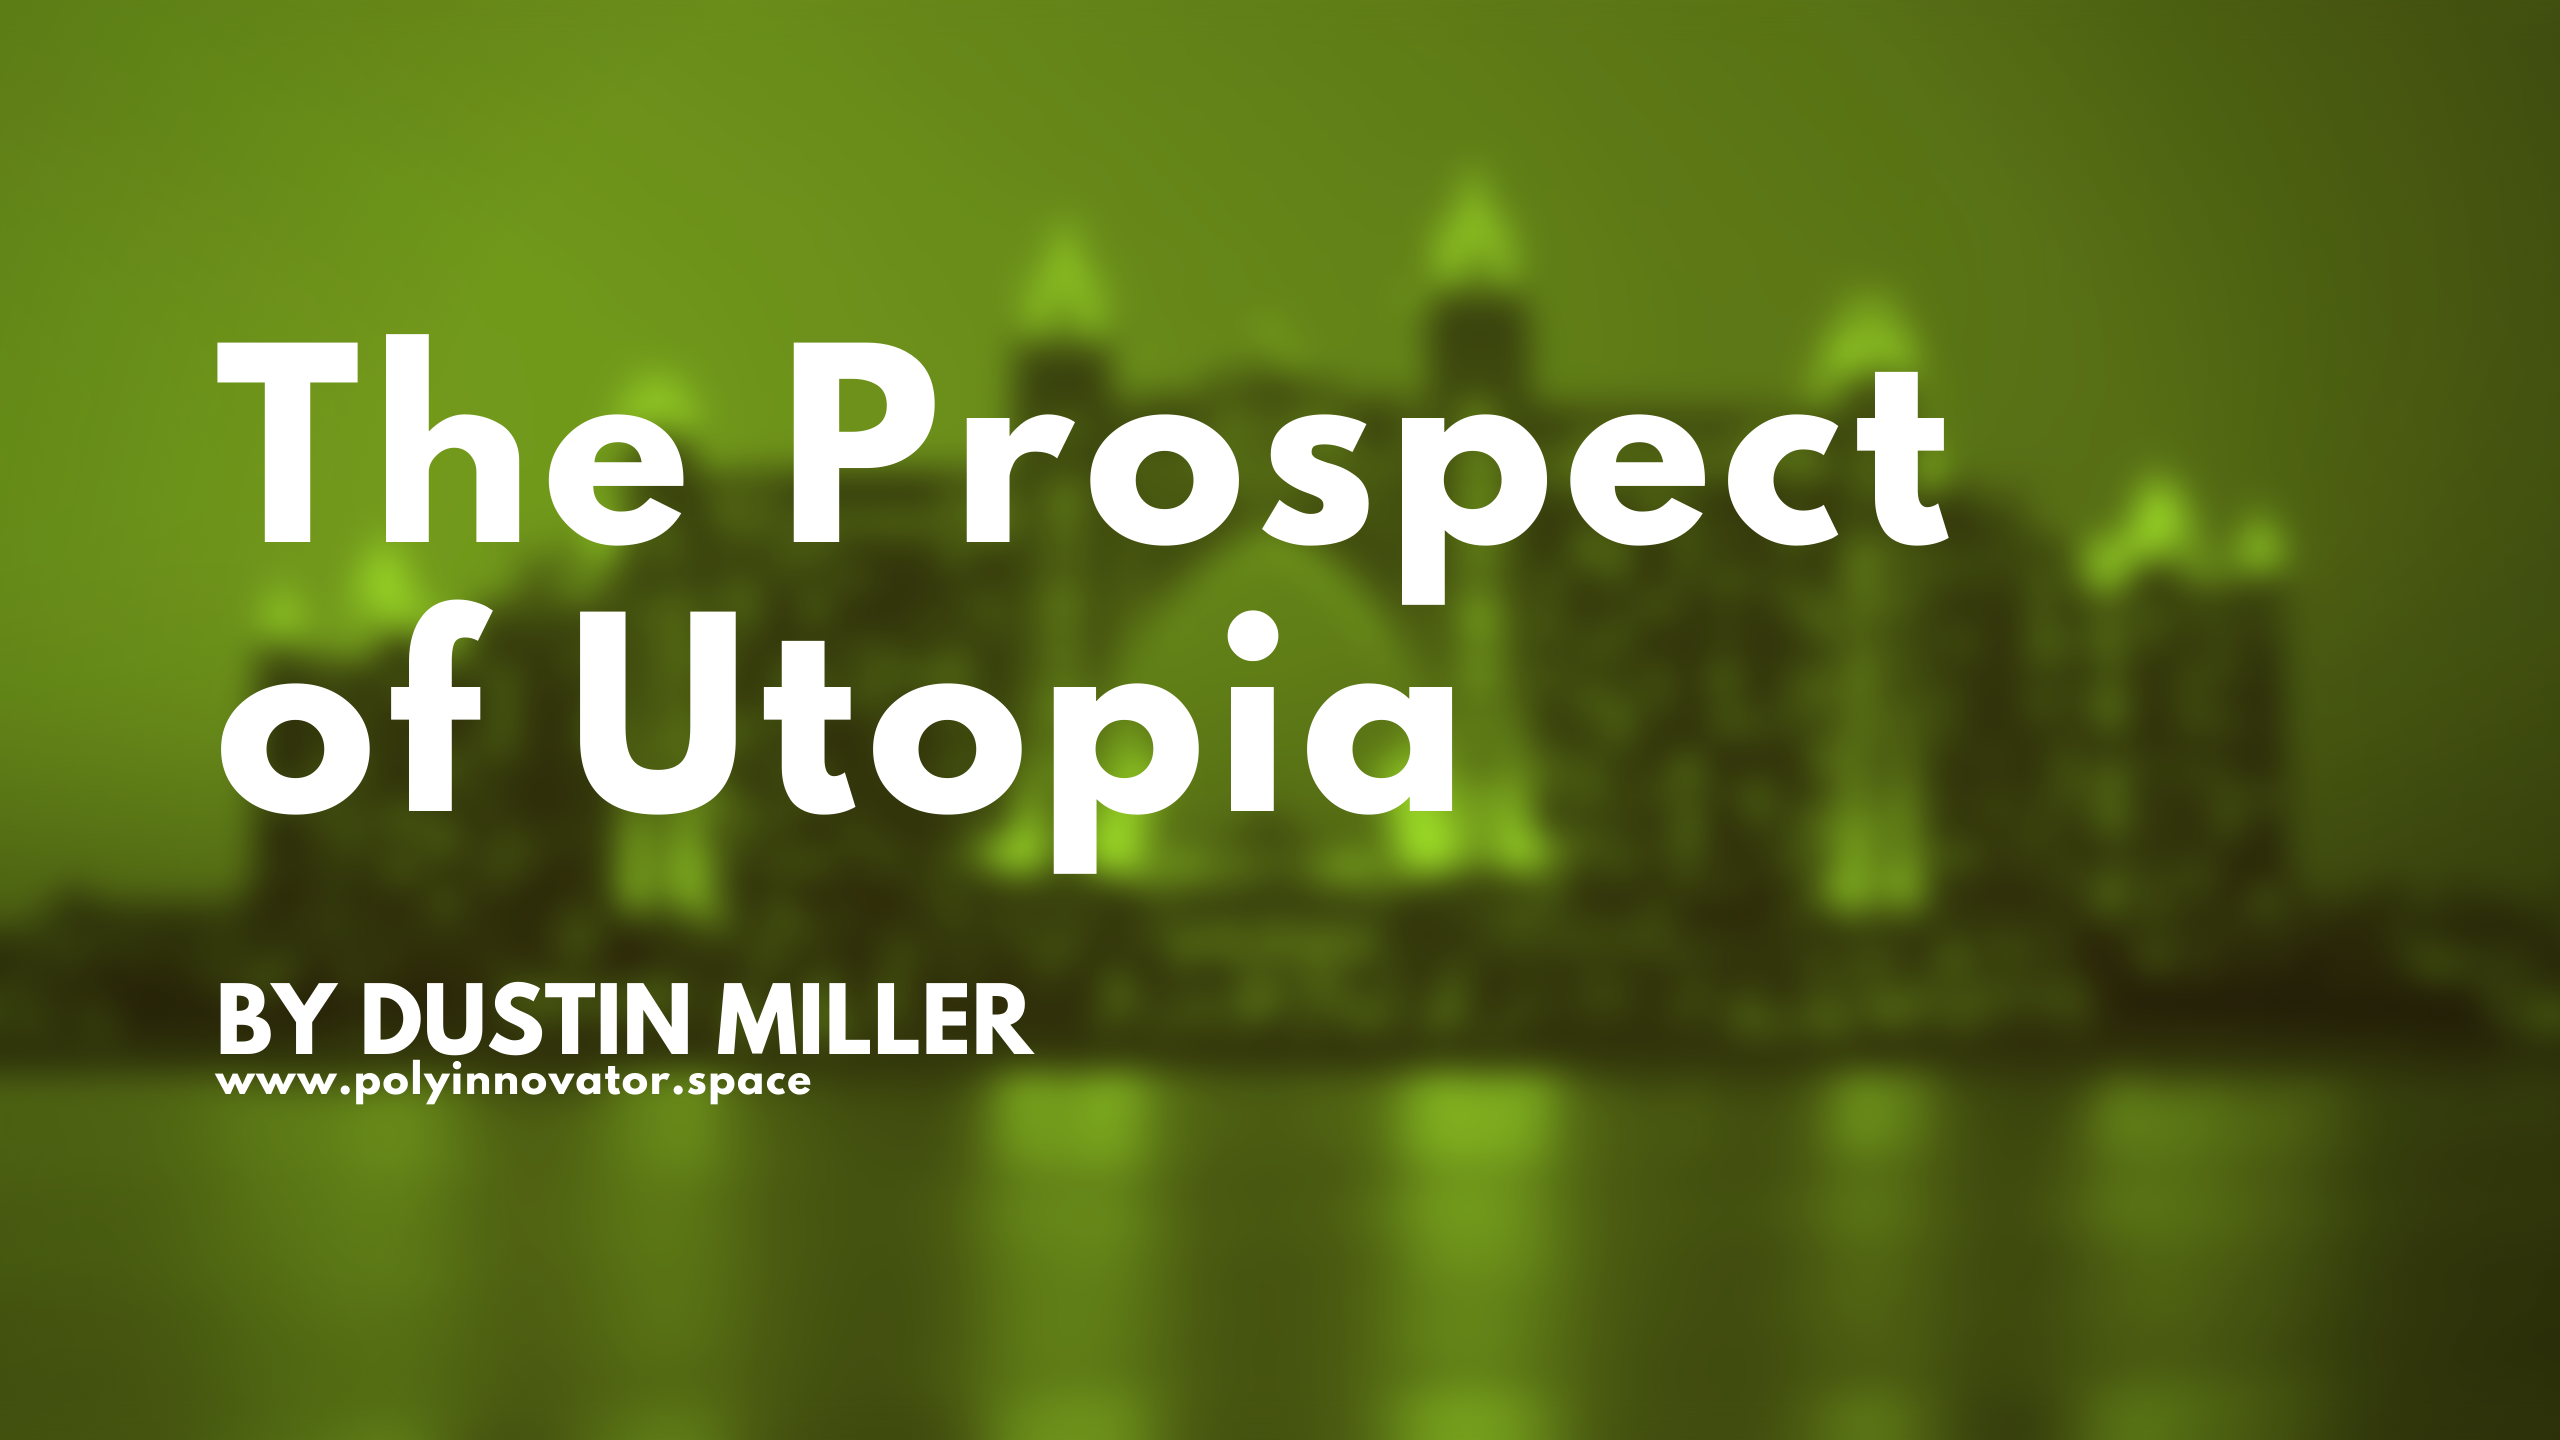 The Prospect of Utopia